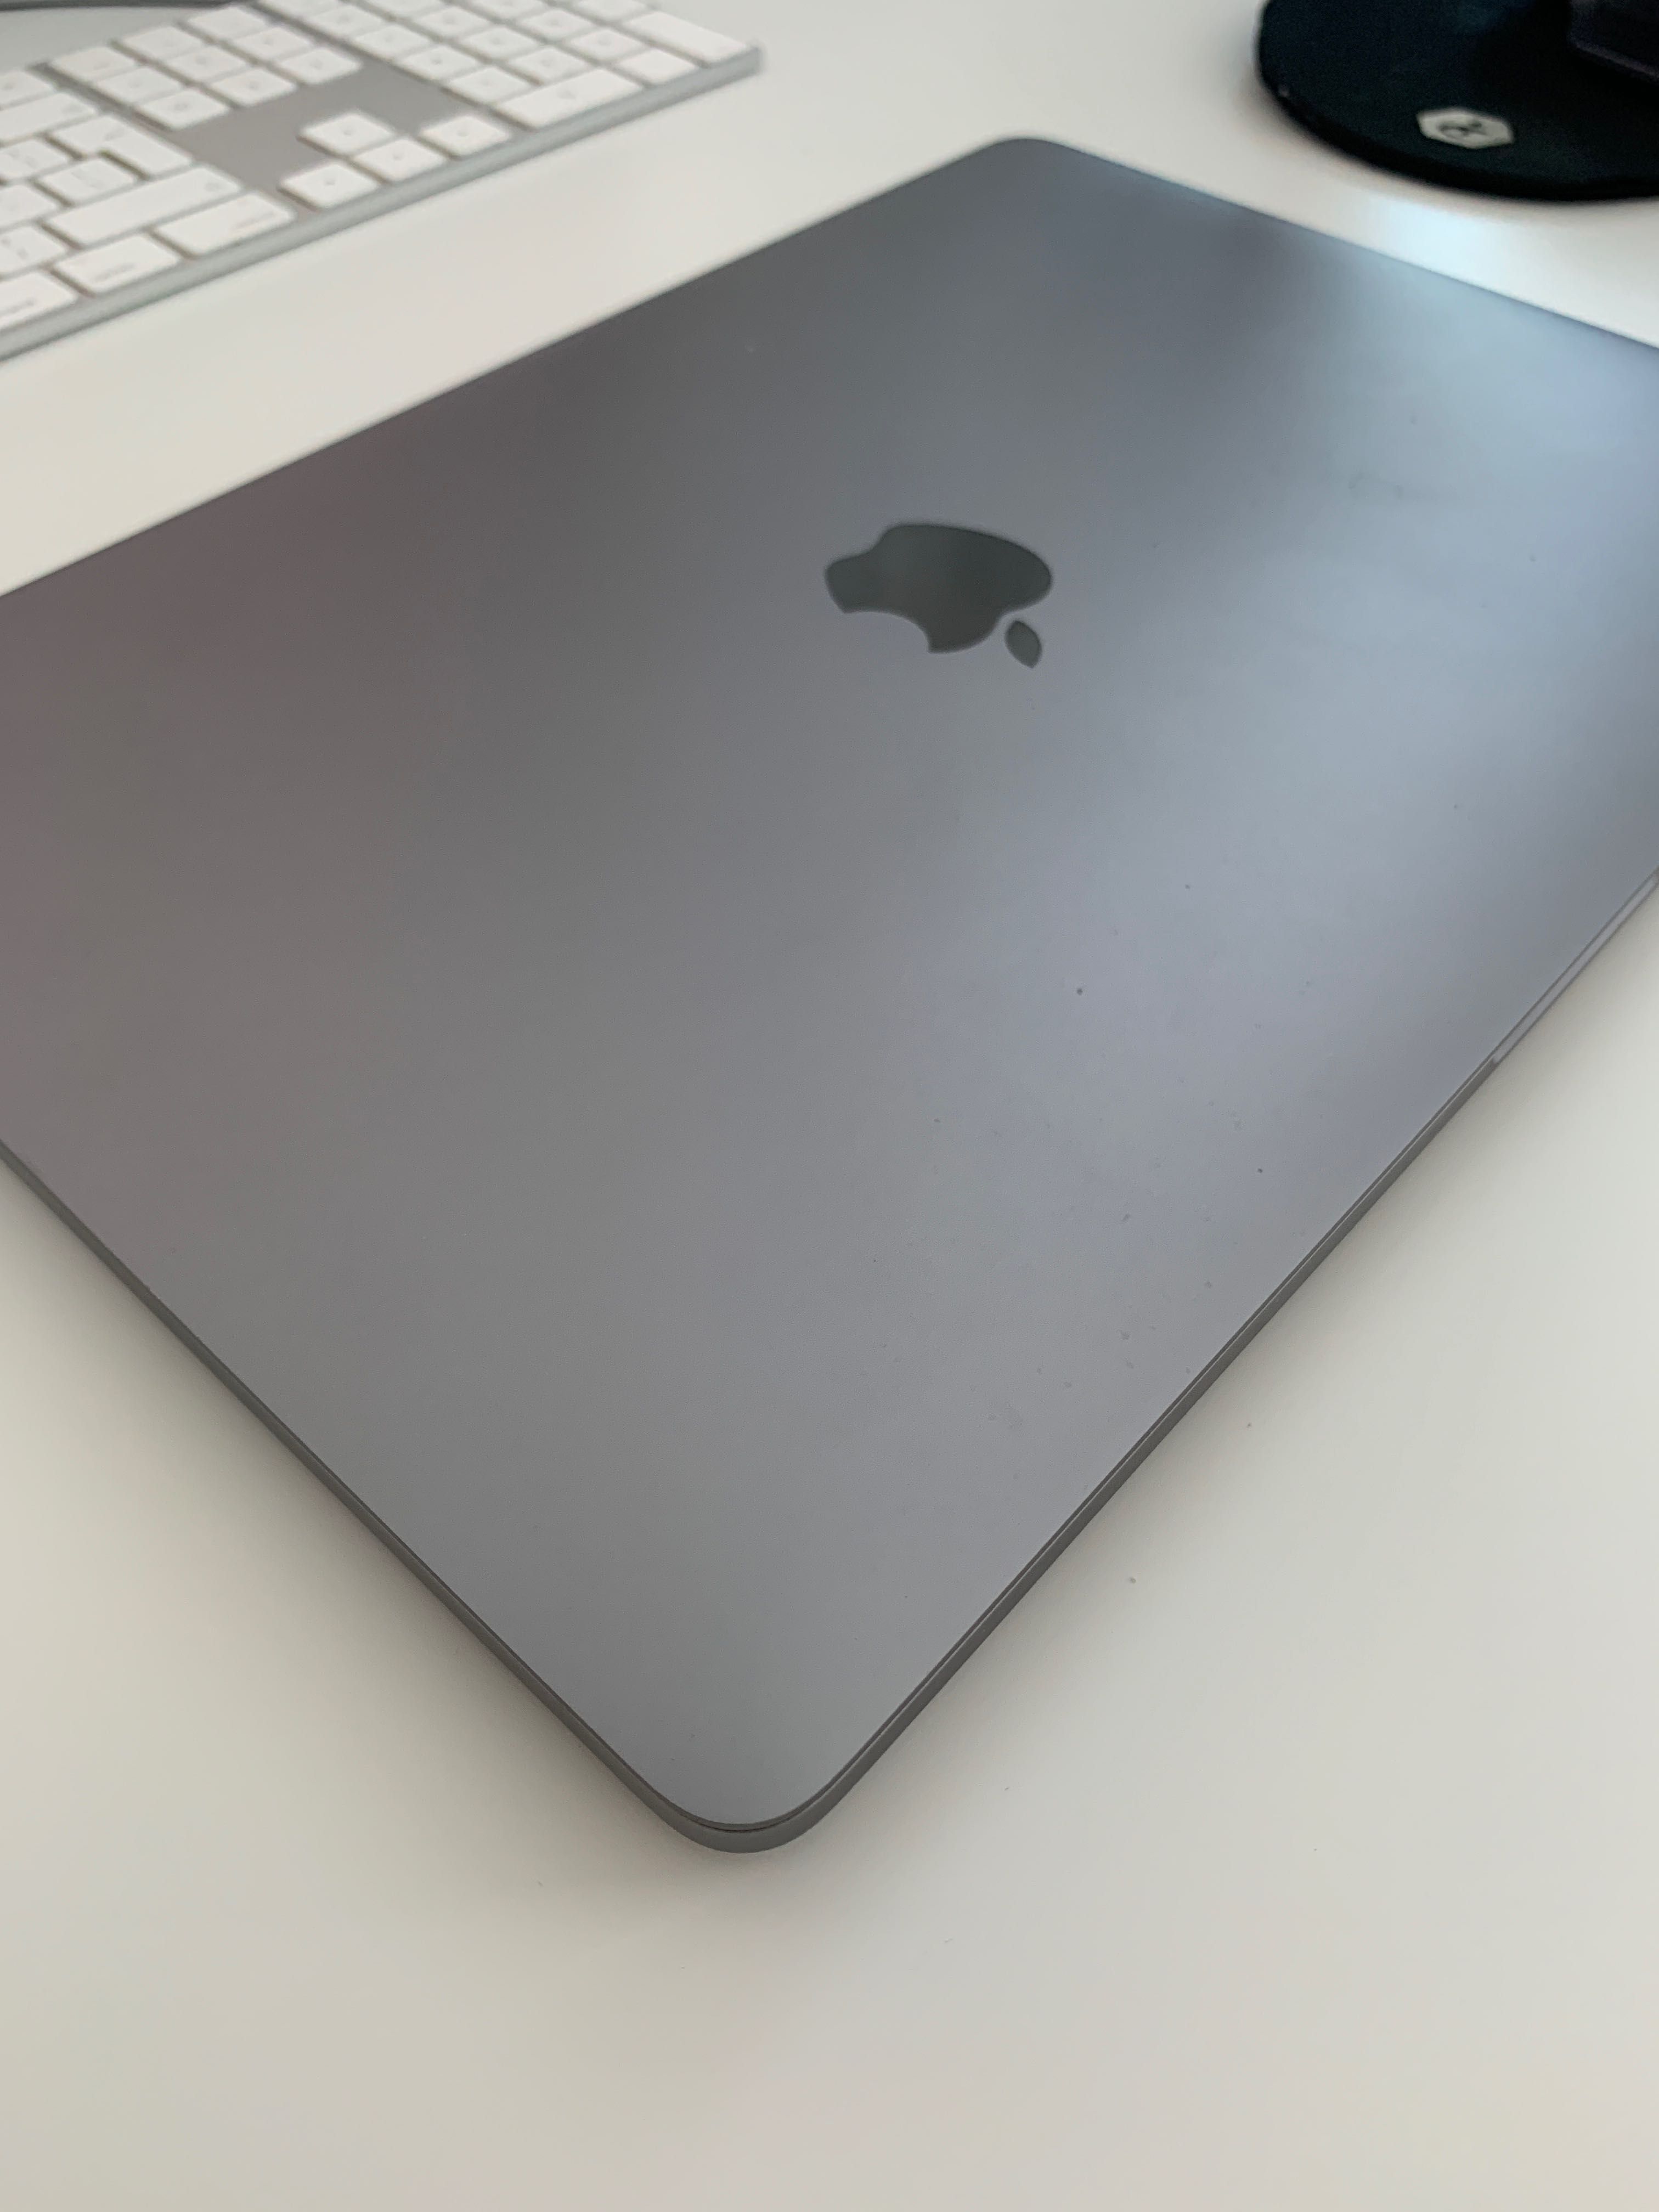 Macbook Pro 13.3" 2018 Space Grey - i5 2.30 GHz, 8GB, 256GB SSD